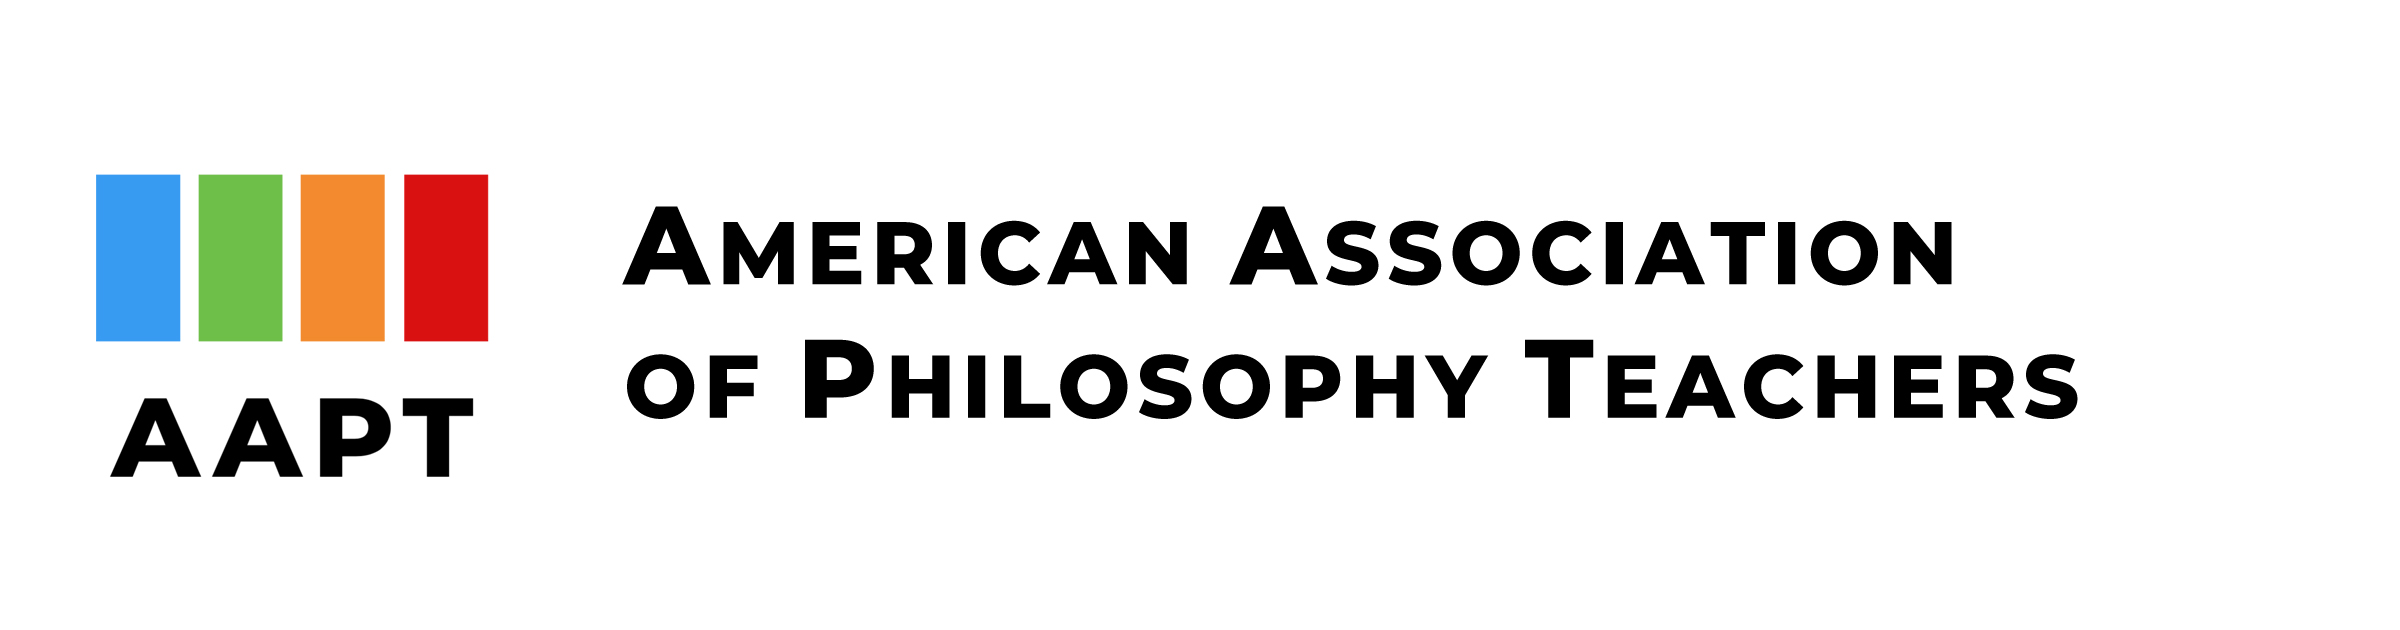 AAPT Logo-Header